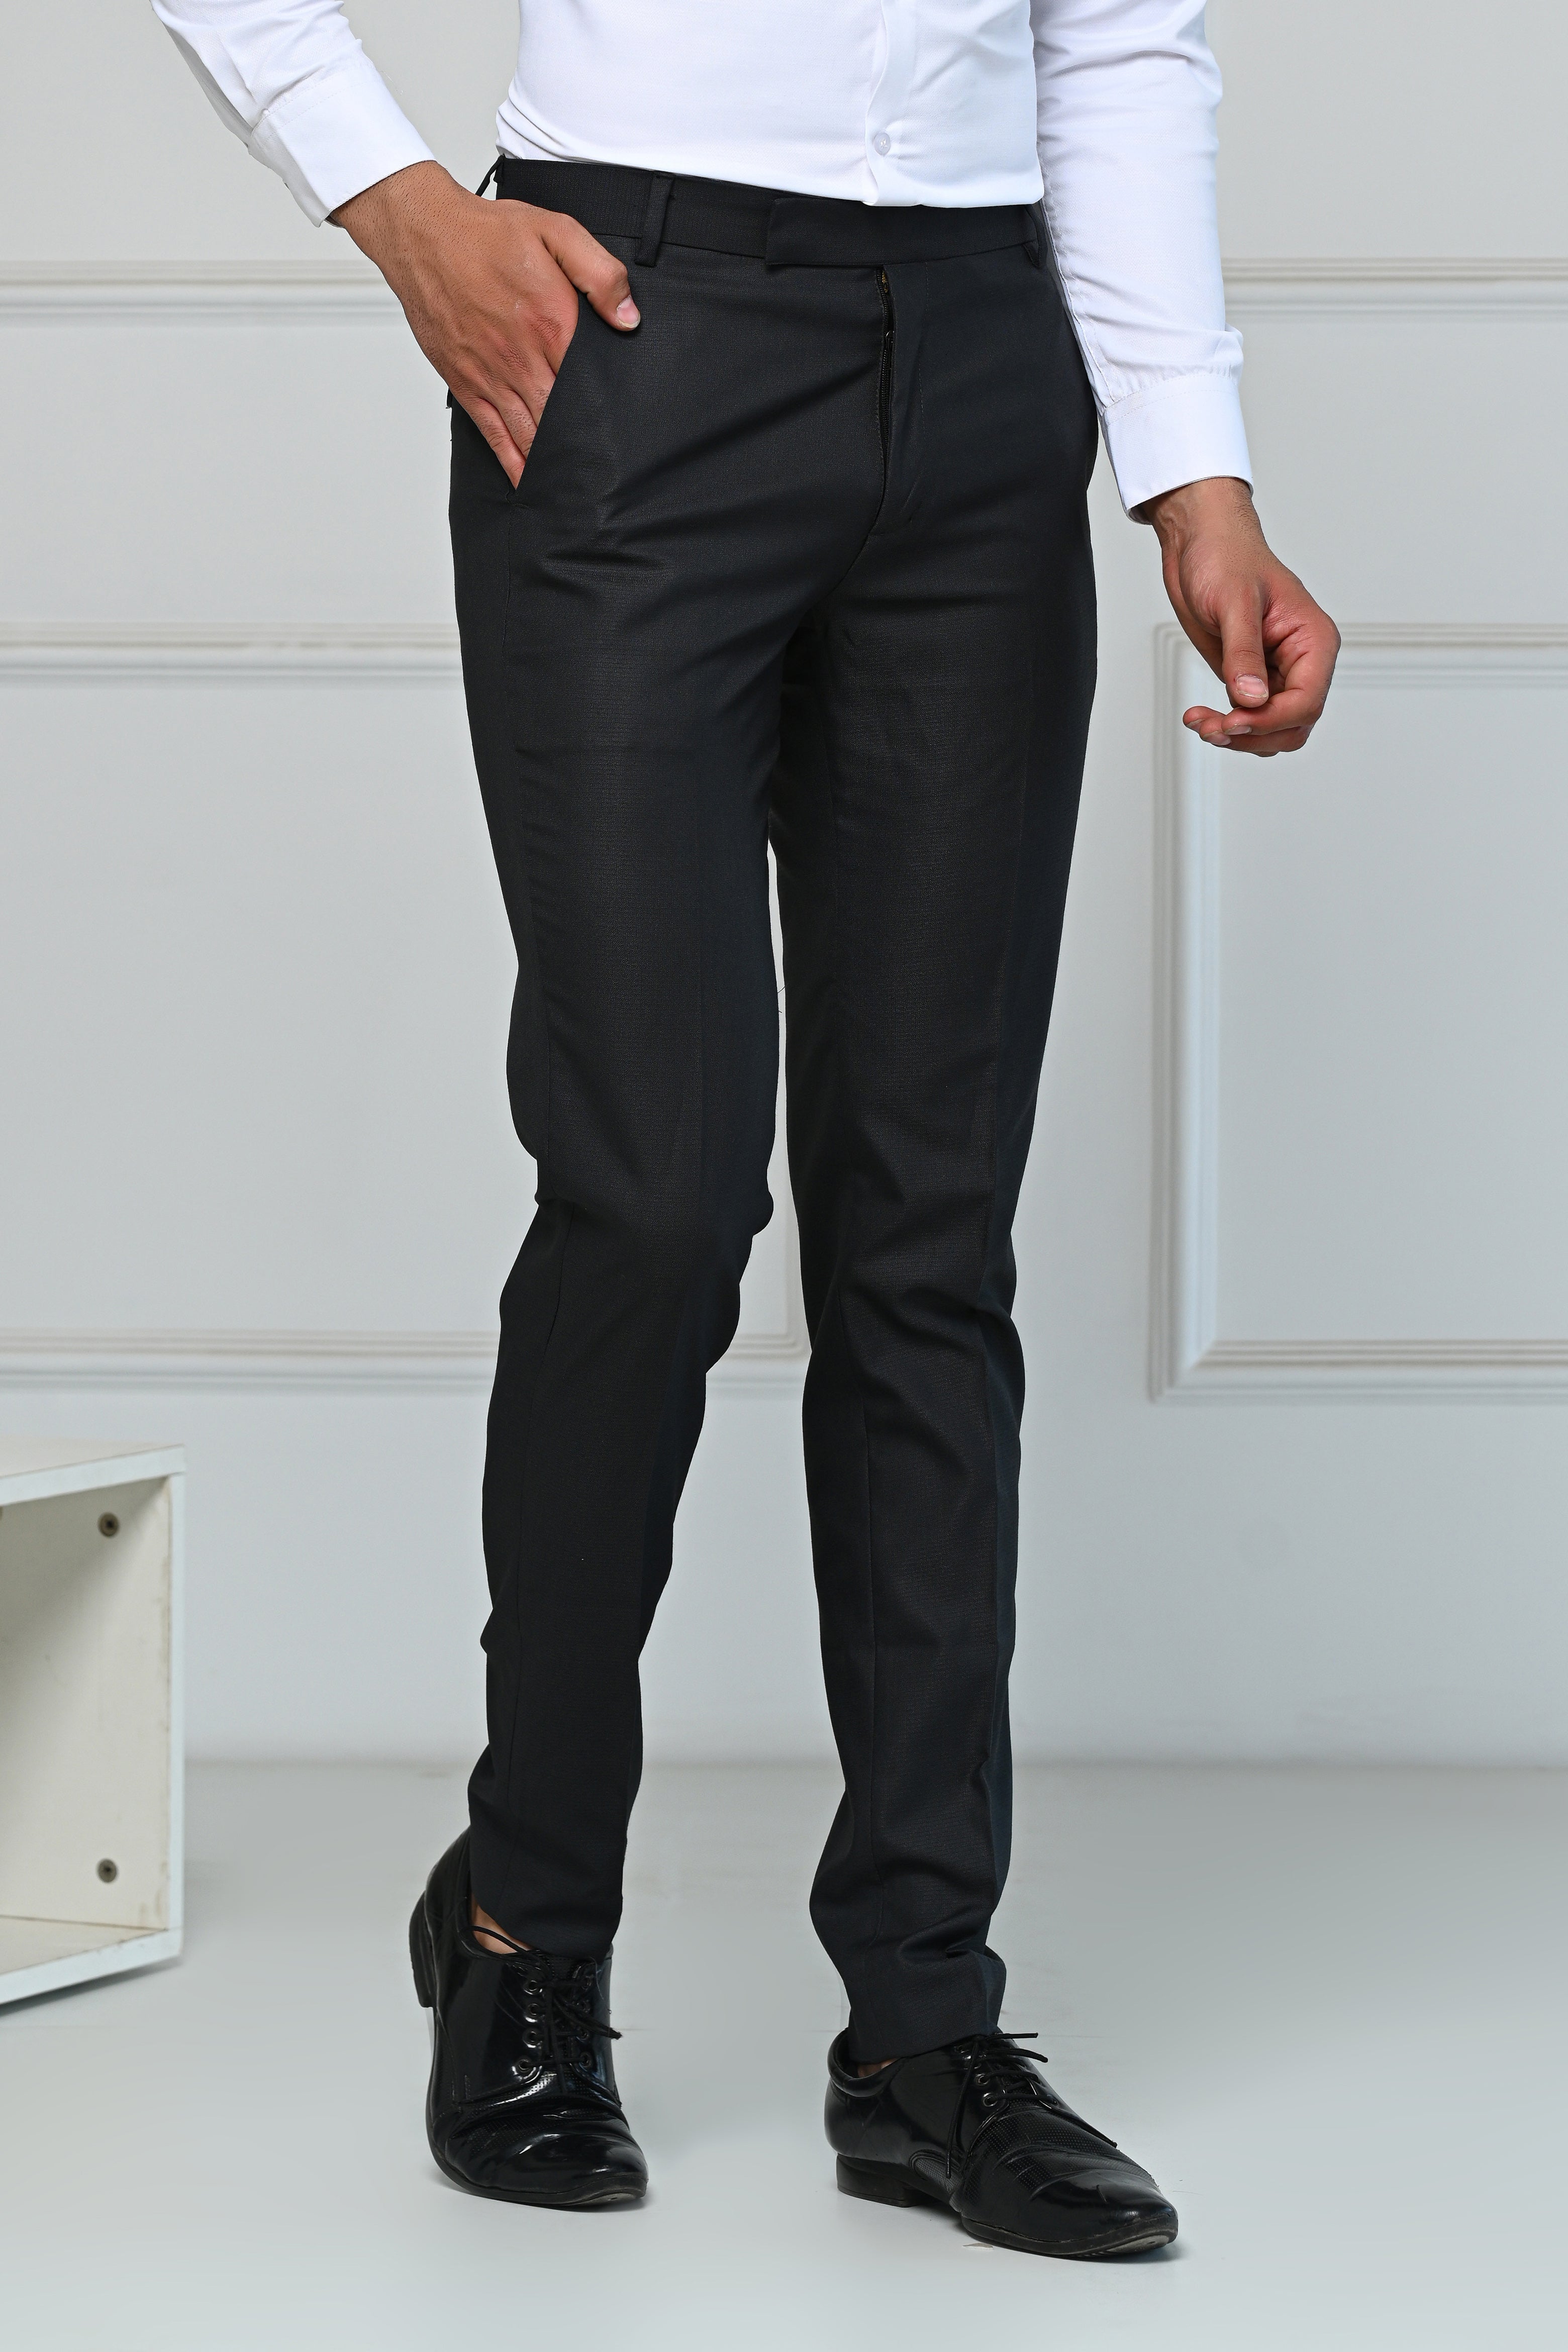 Arrow Formal Trousers  Buy Arrow Men Grey Mid Rise Herringbone Pattern Formal  Trousers Online  Nykaa Fashion